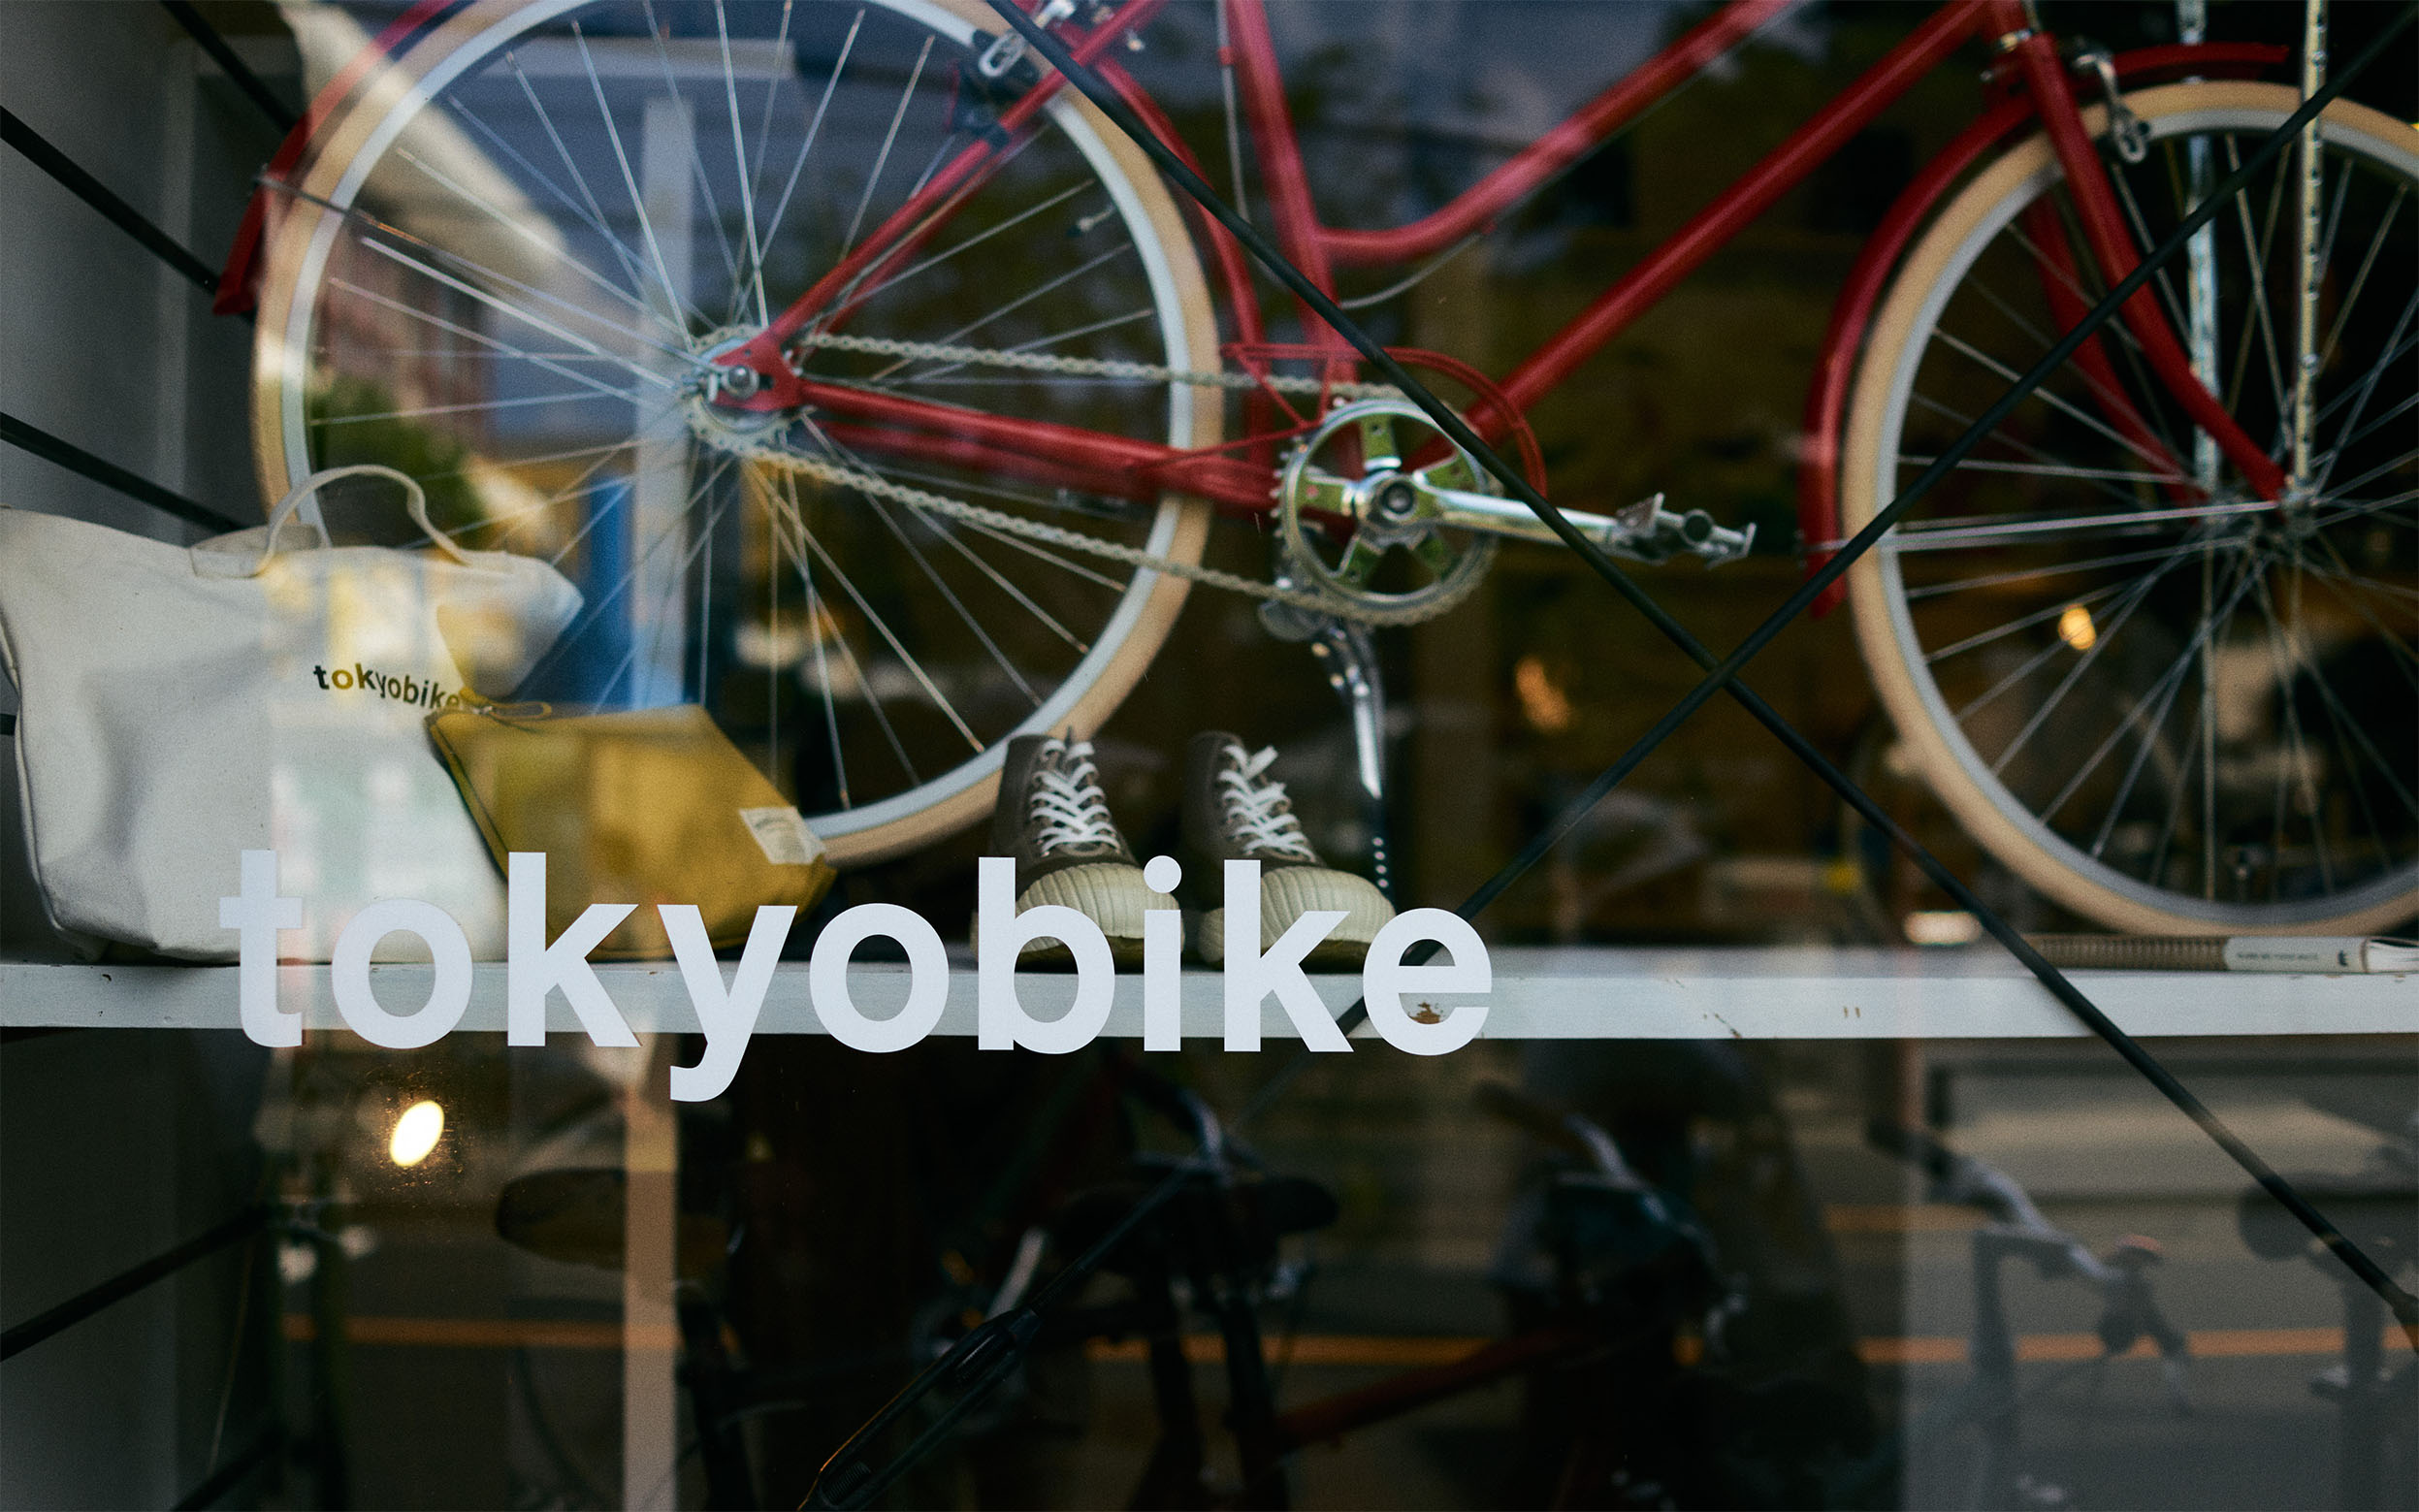 015コロナ禍で変化のきざしを見せる 東京の自転車事情 街を楽しむ トレンドの先鞭をつけた Tokyobikeの先見性にフォーカス Tp東京